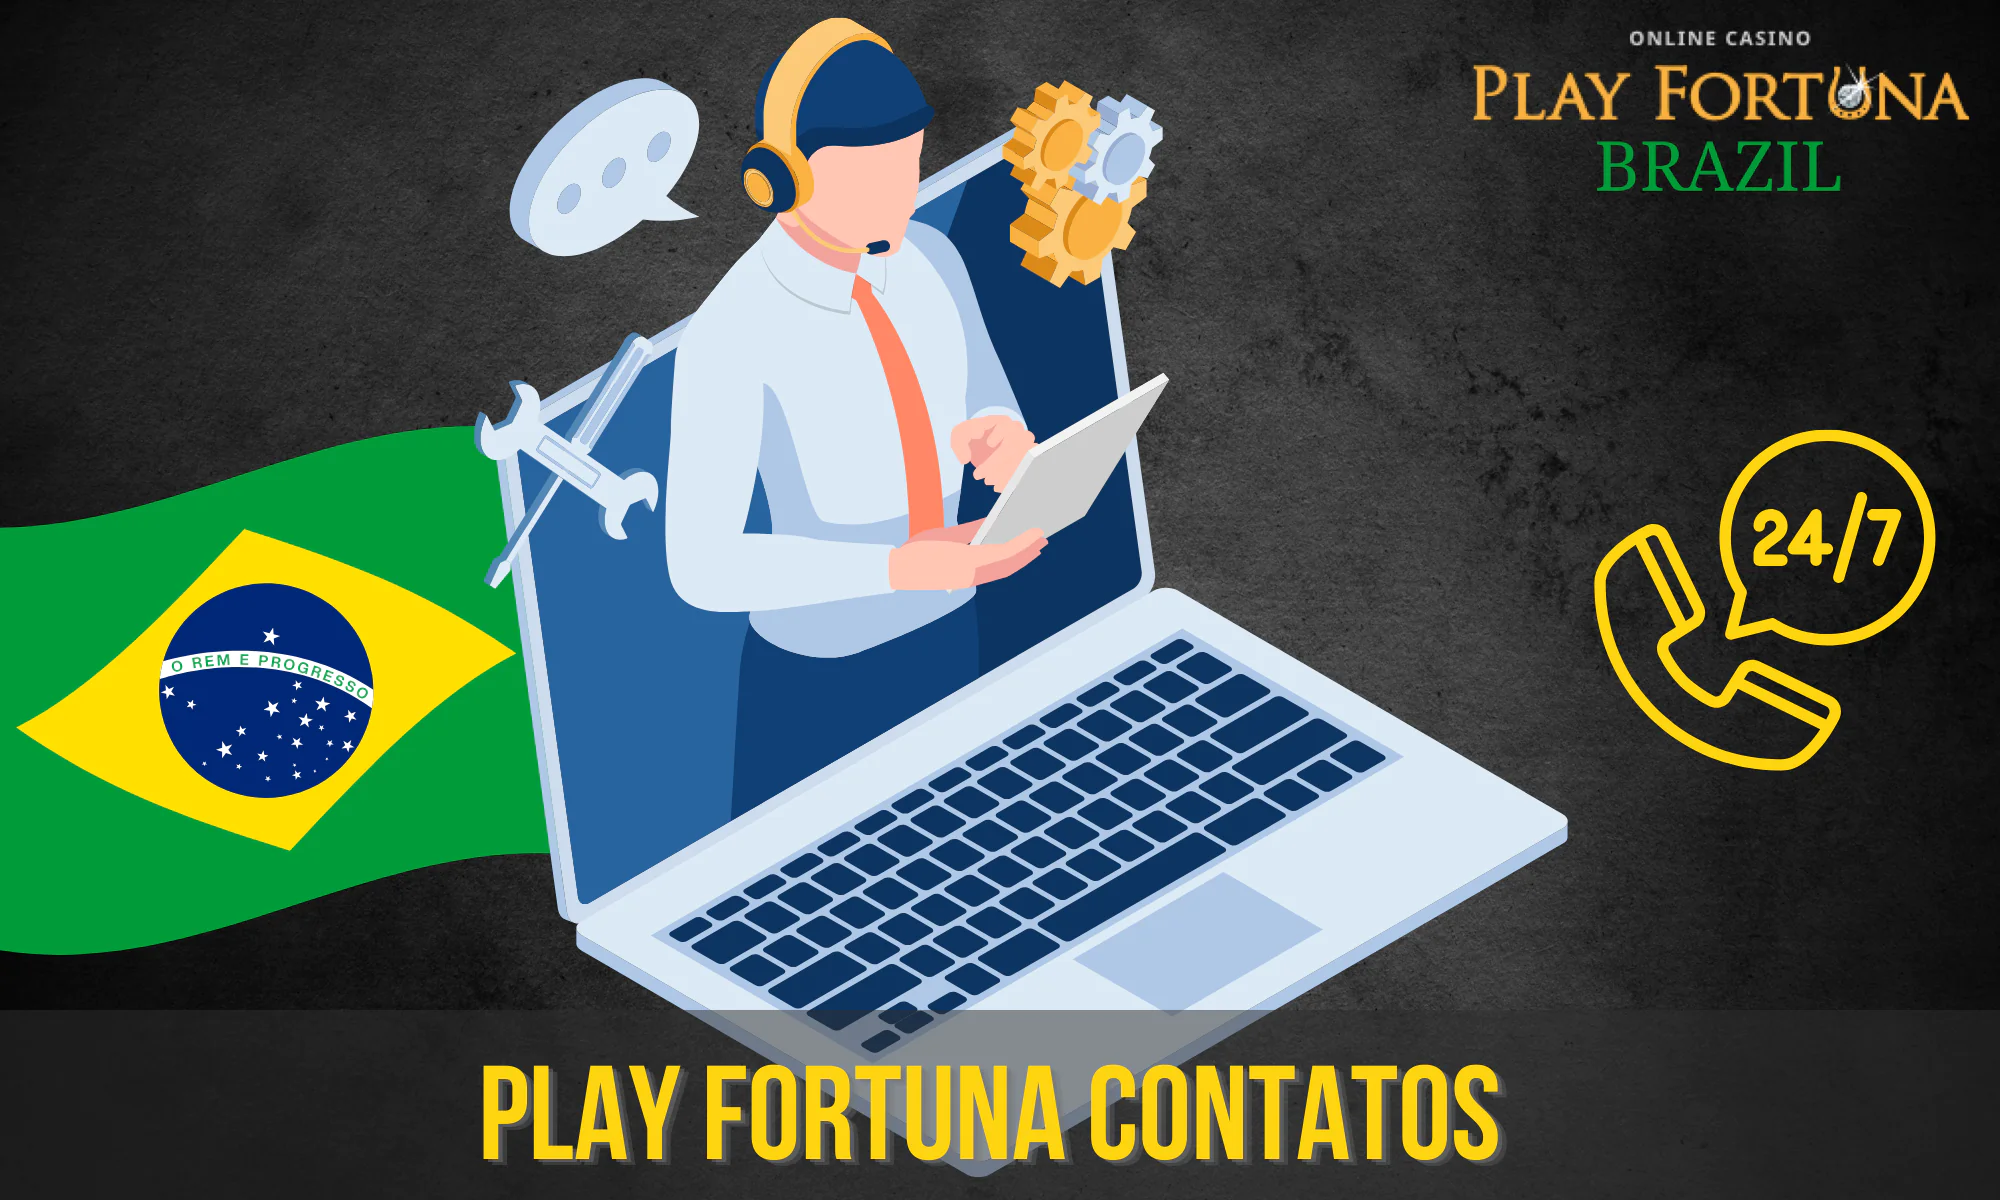 O Play Fortuna tem um departamento de assistência ao jogador dedicado 24 horas por dia, 7 dias por semana